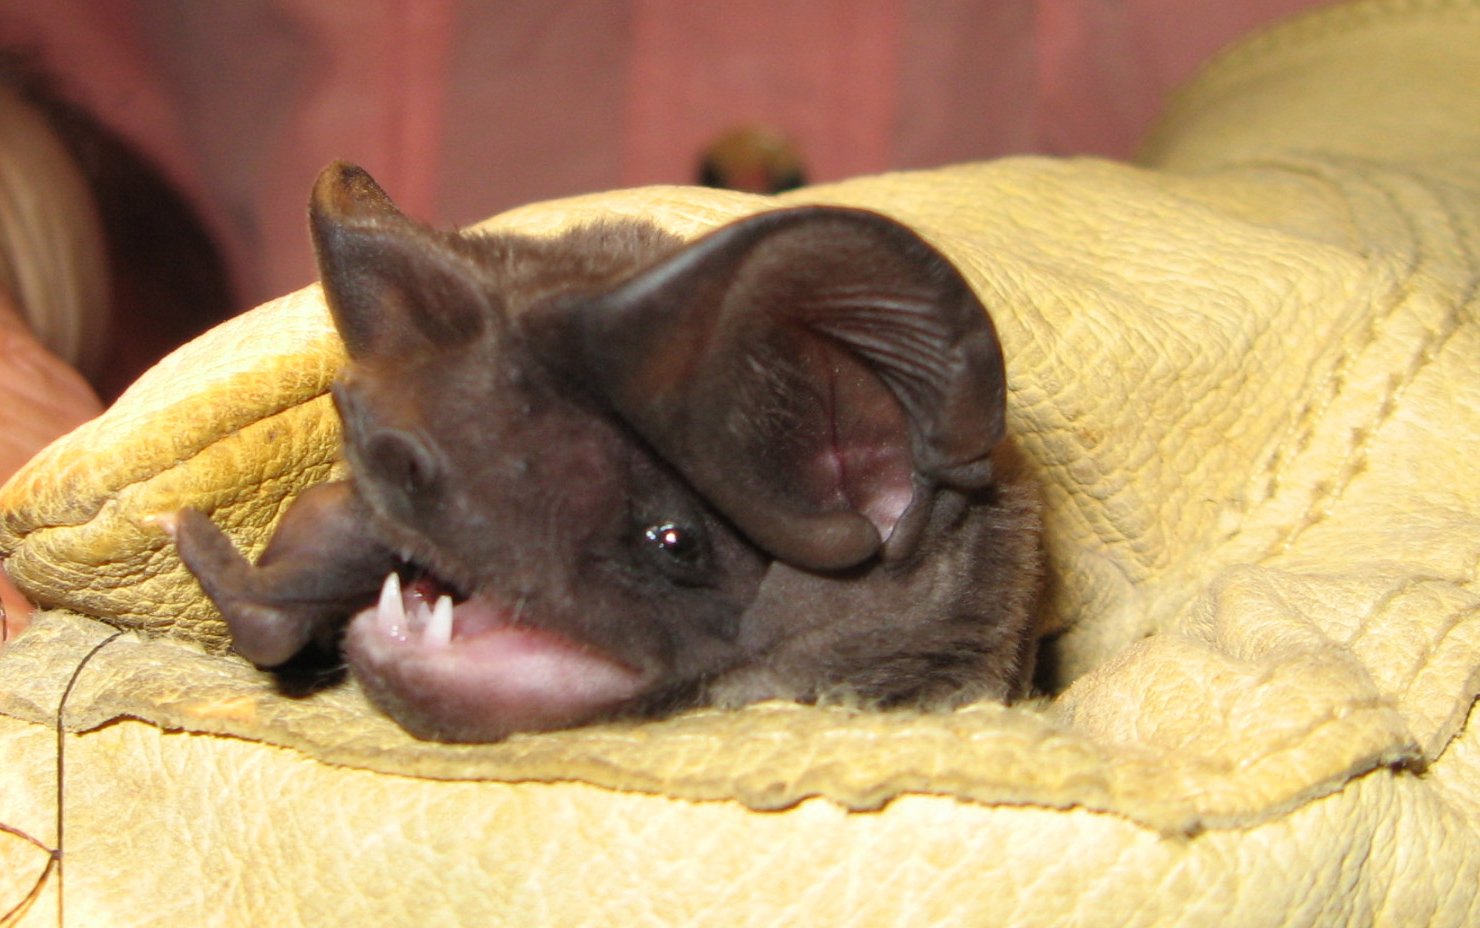 Bonneted Bat